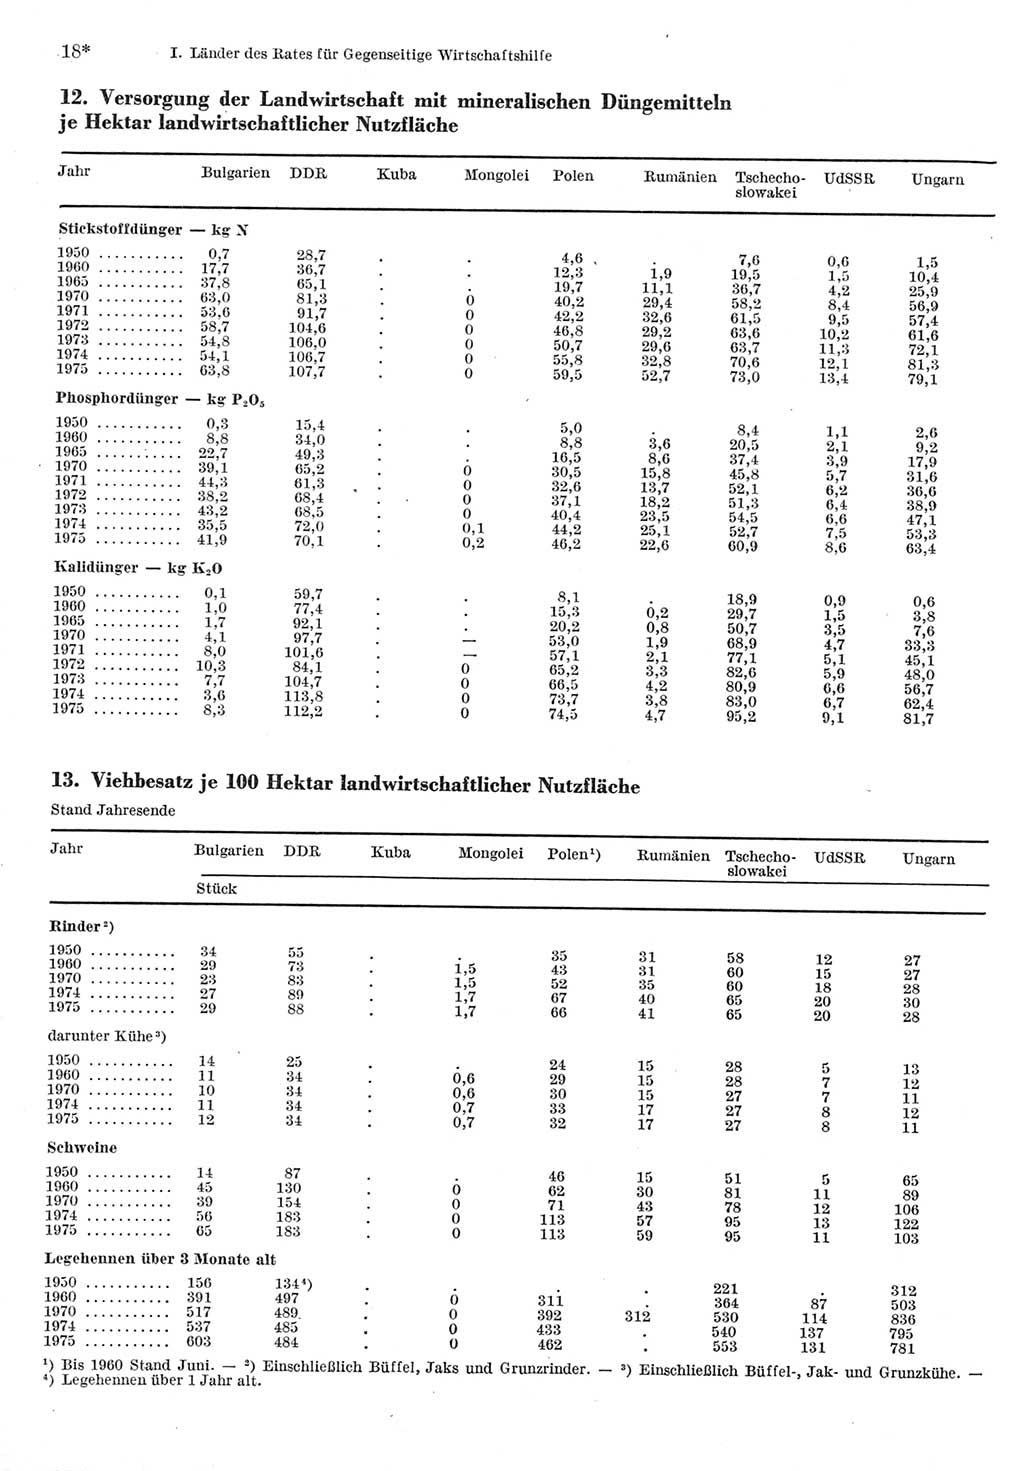 Statistisches Jahrbuch der Deutschen Demokratischen Republik (DDR) 1977, Seite 18 (Stat. Jb. DDR 1977, S. 18)